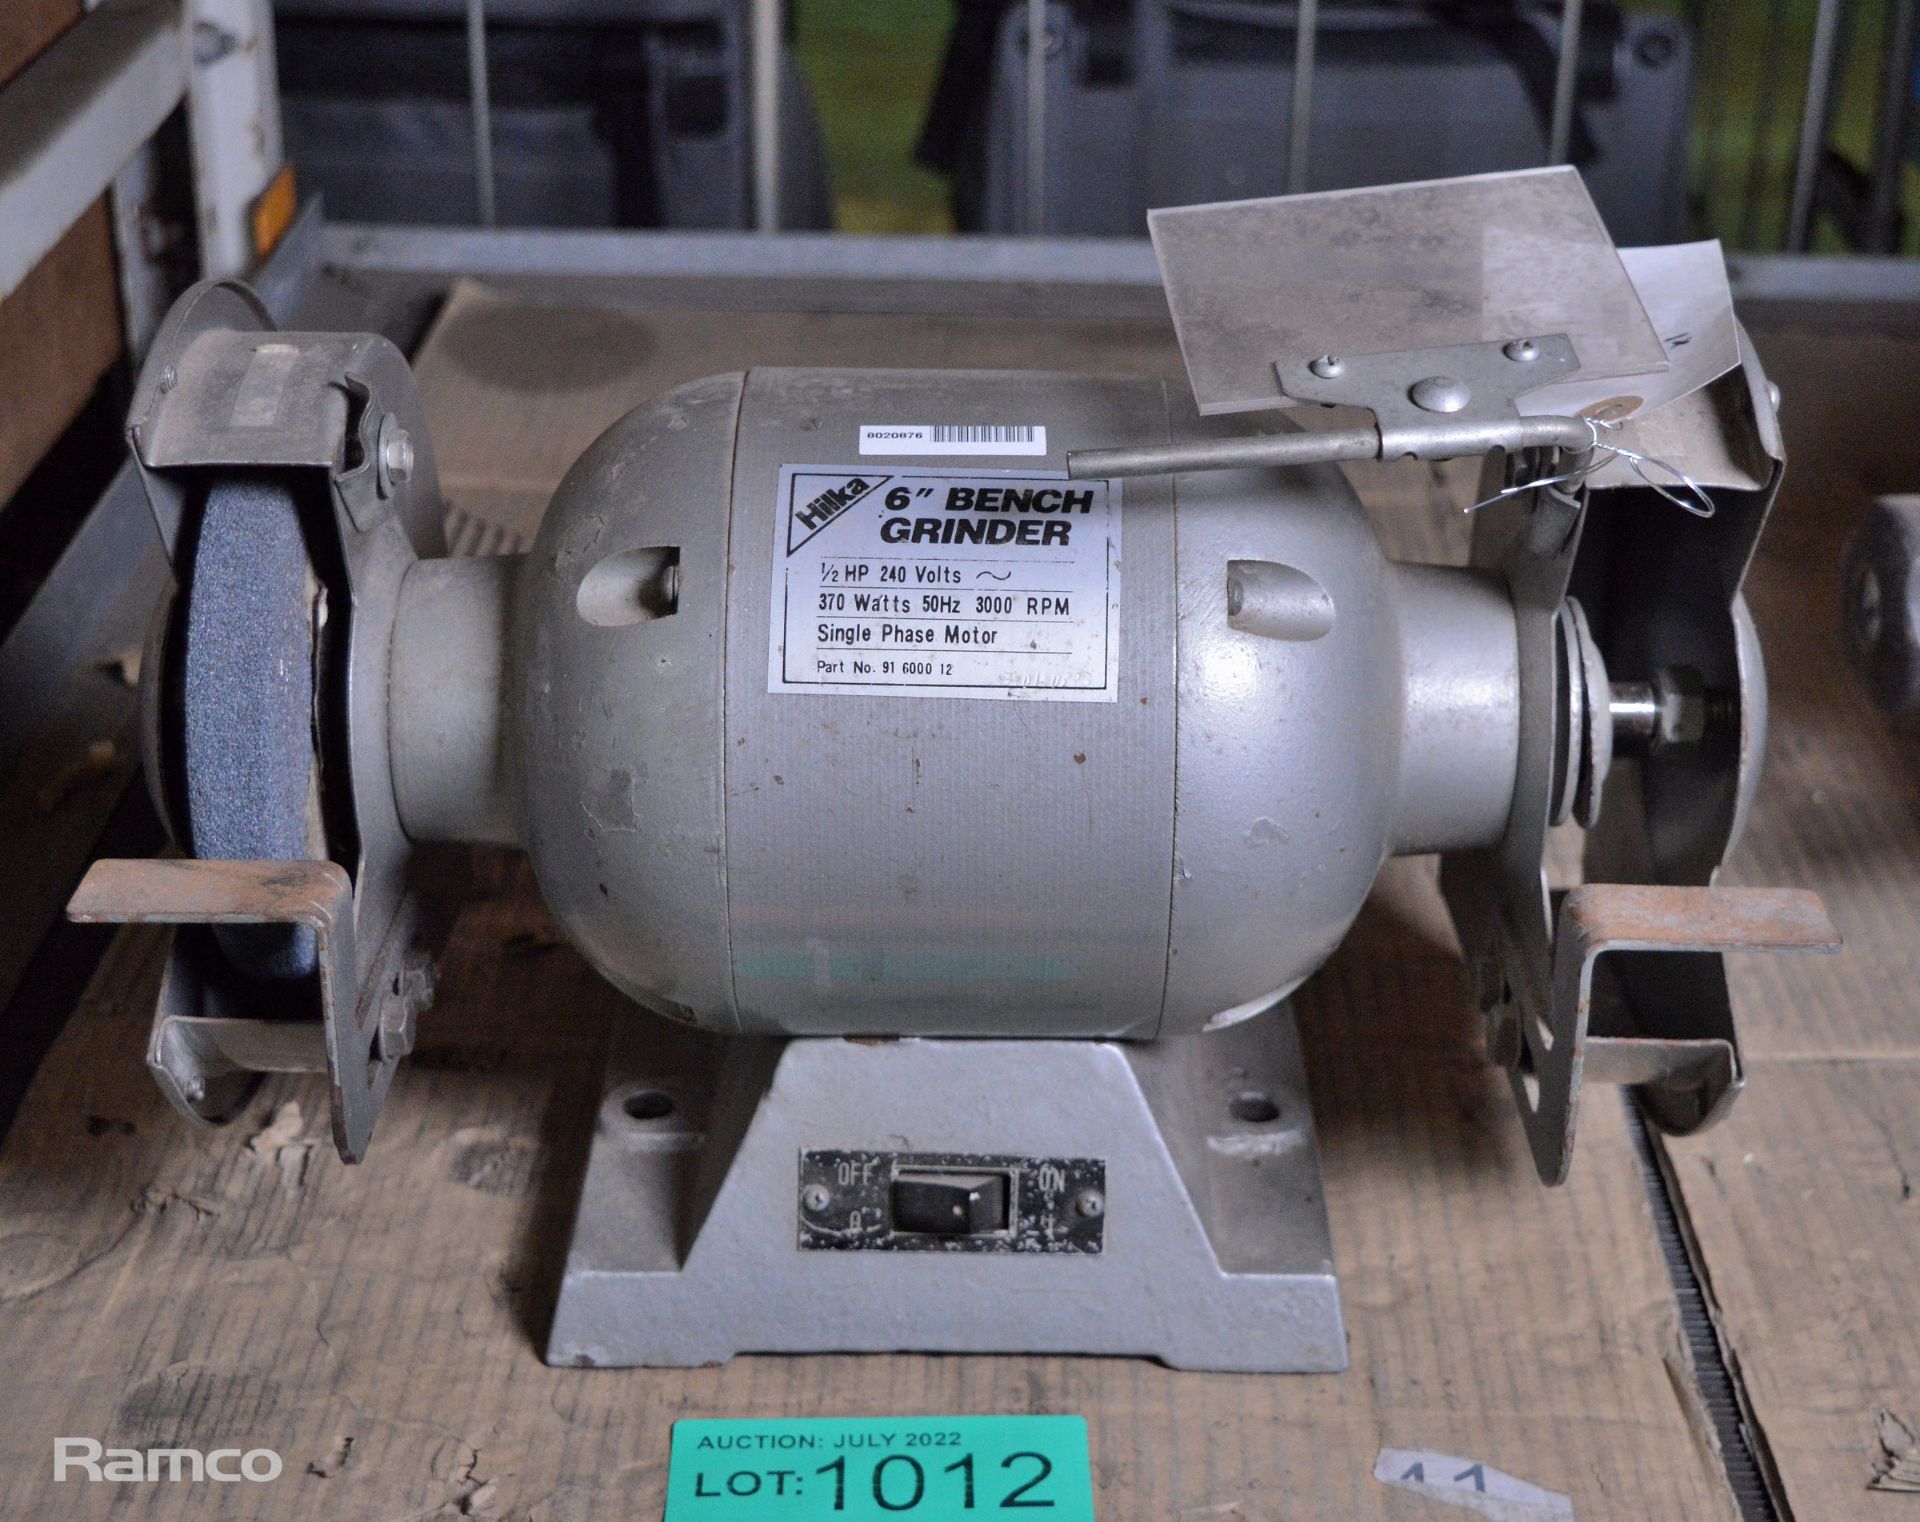 Hilka 6 inch electric bench grinder 240v - Image 2 of 5